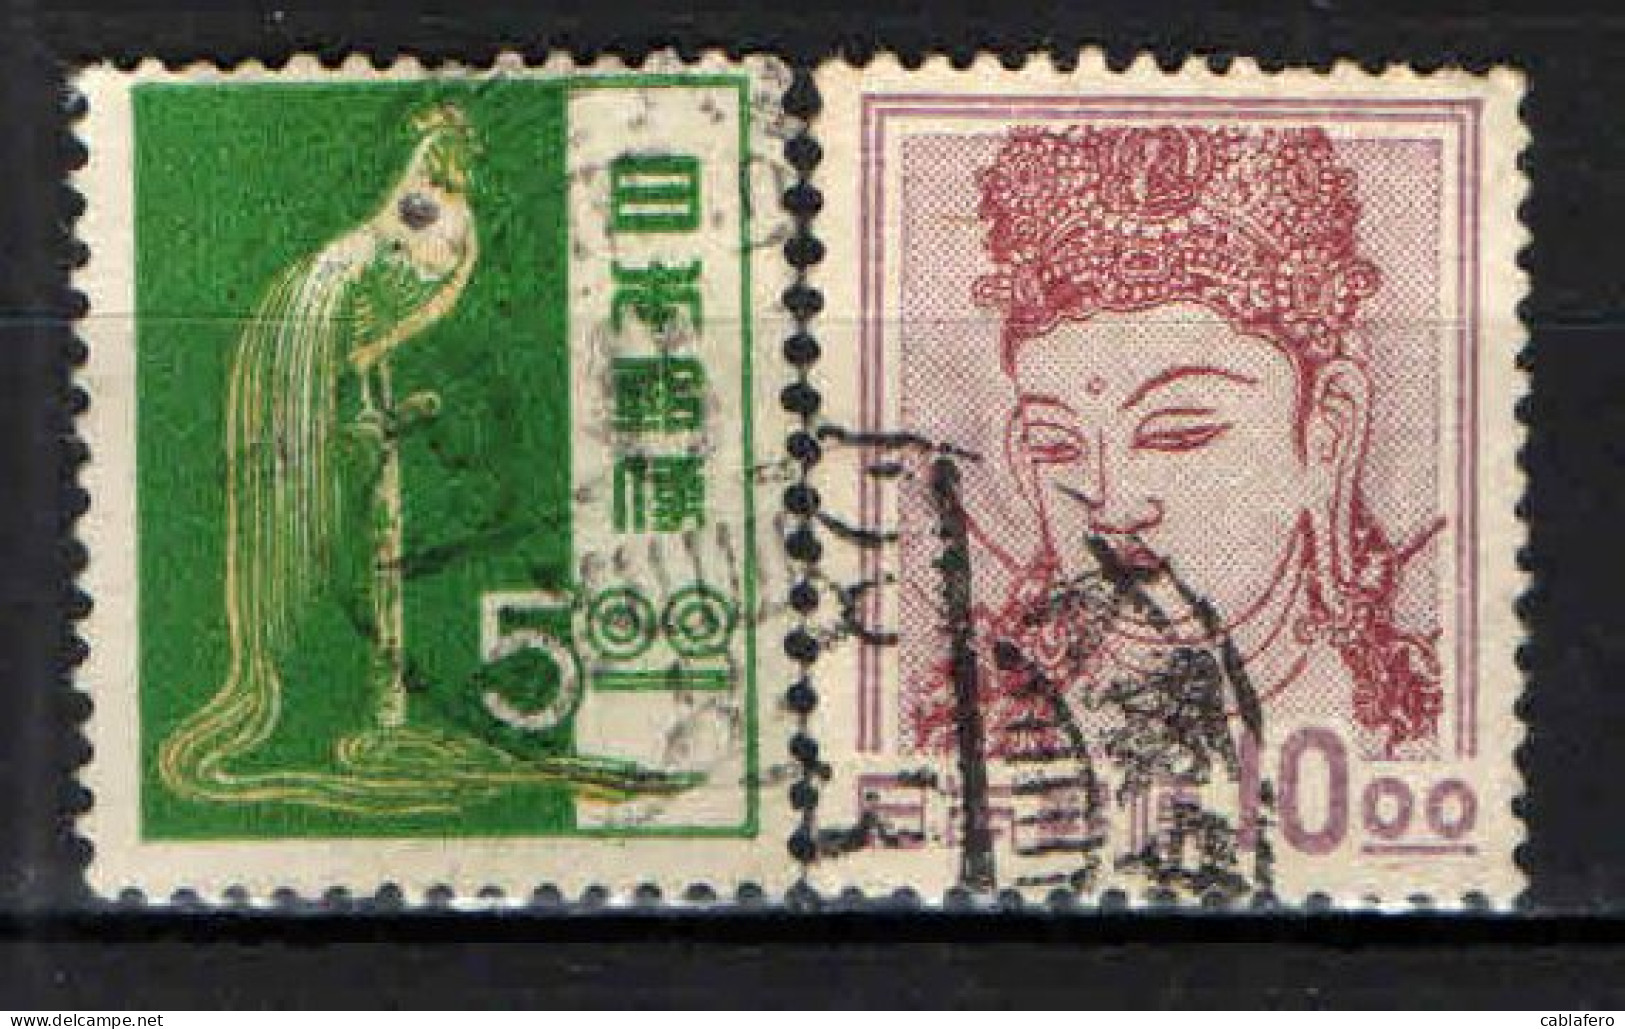  GIAPPONE - 1950 -  HISOKA MAEJIMA - DEA CANNON - USATI - Used Stamps